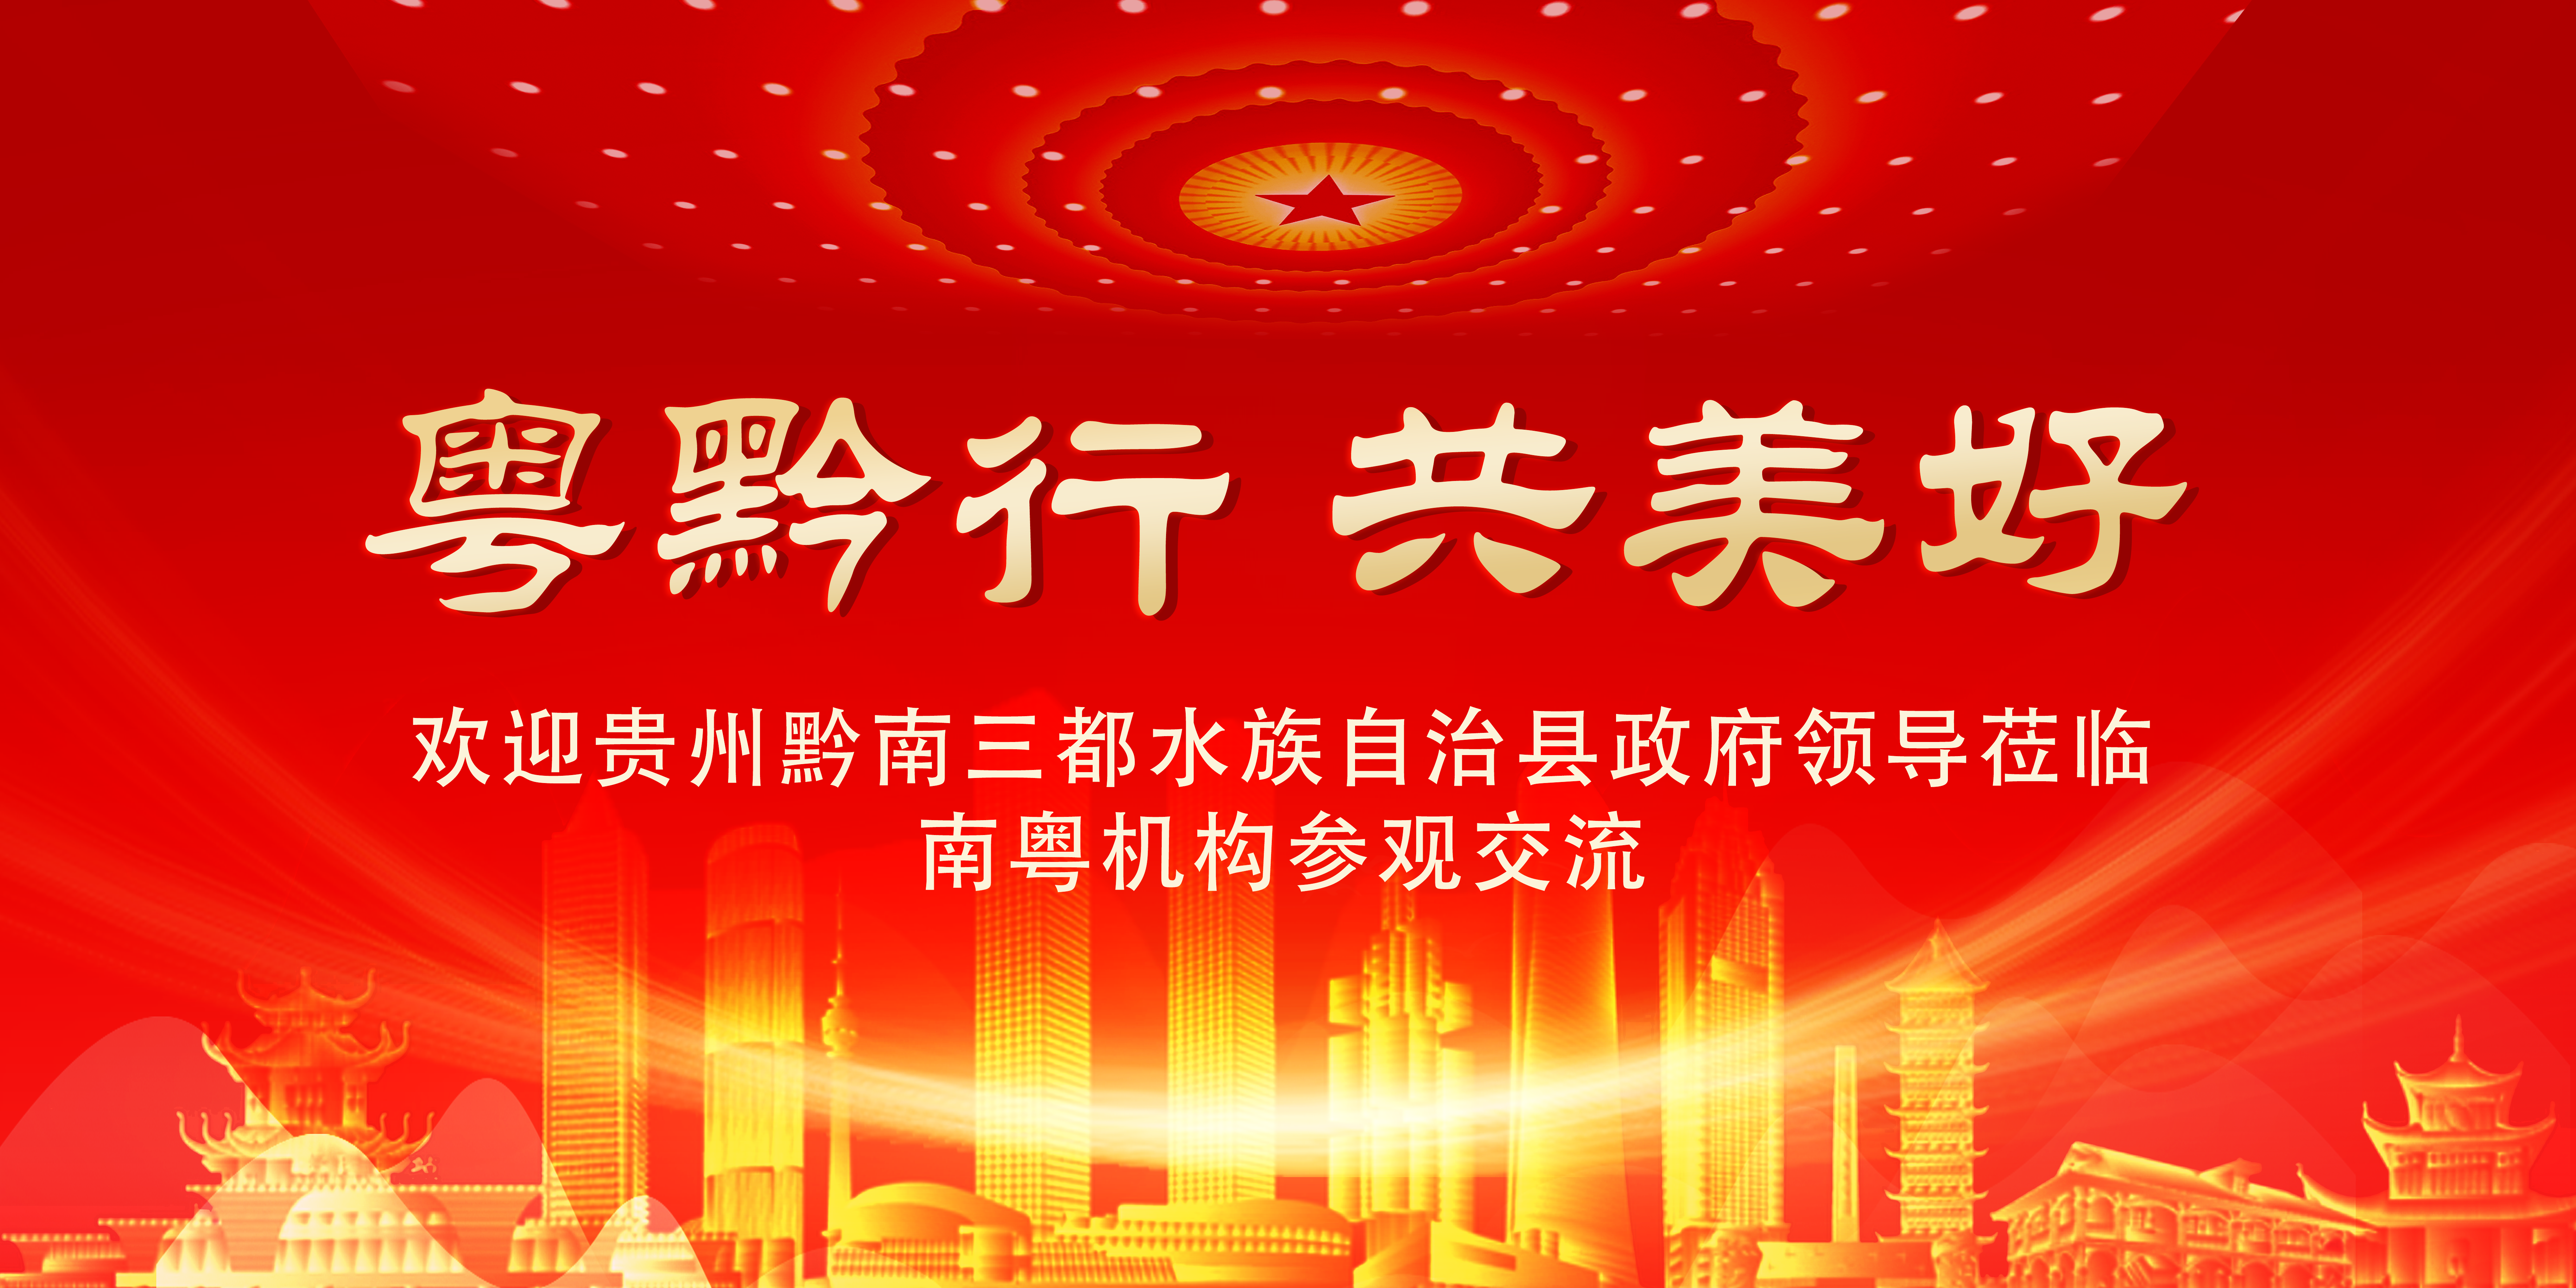 2023中国乡村振兴公益光芒之路启动仪式 暨首届文化强国品牌数字化建设政企对话